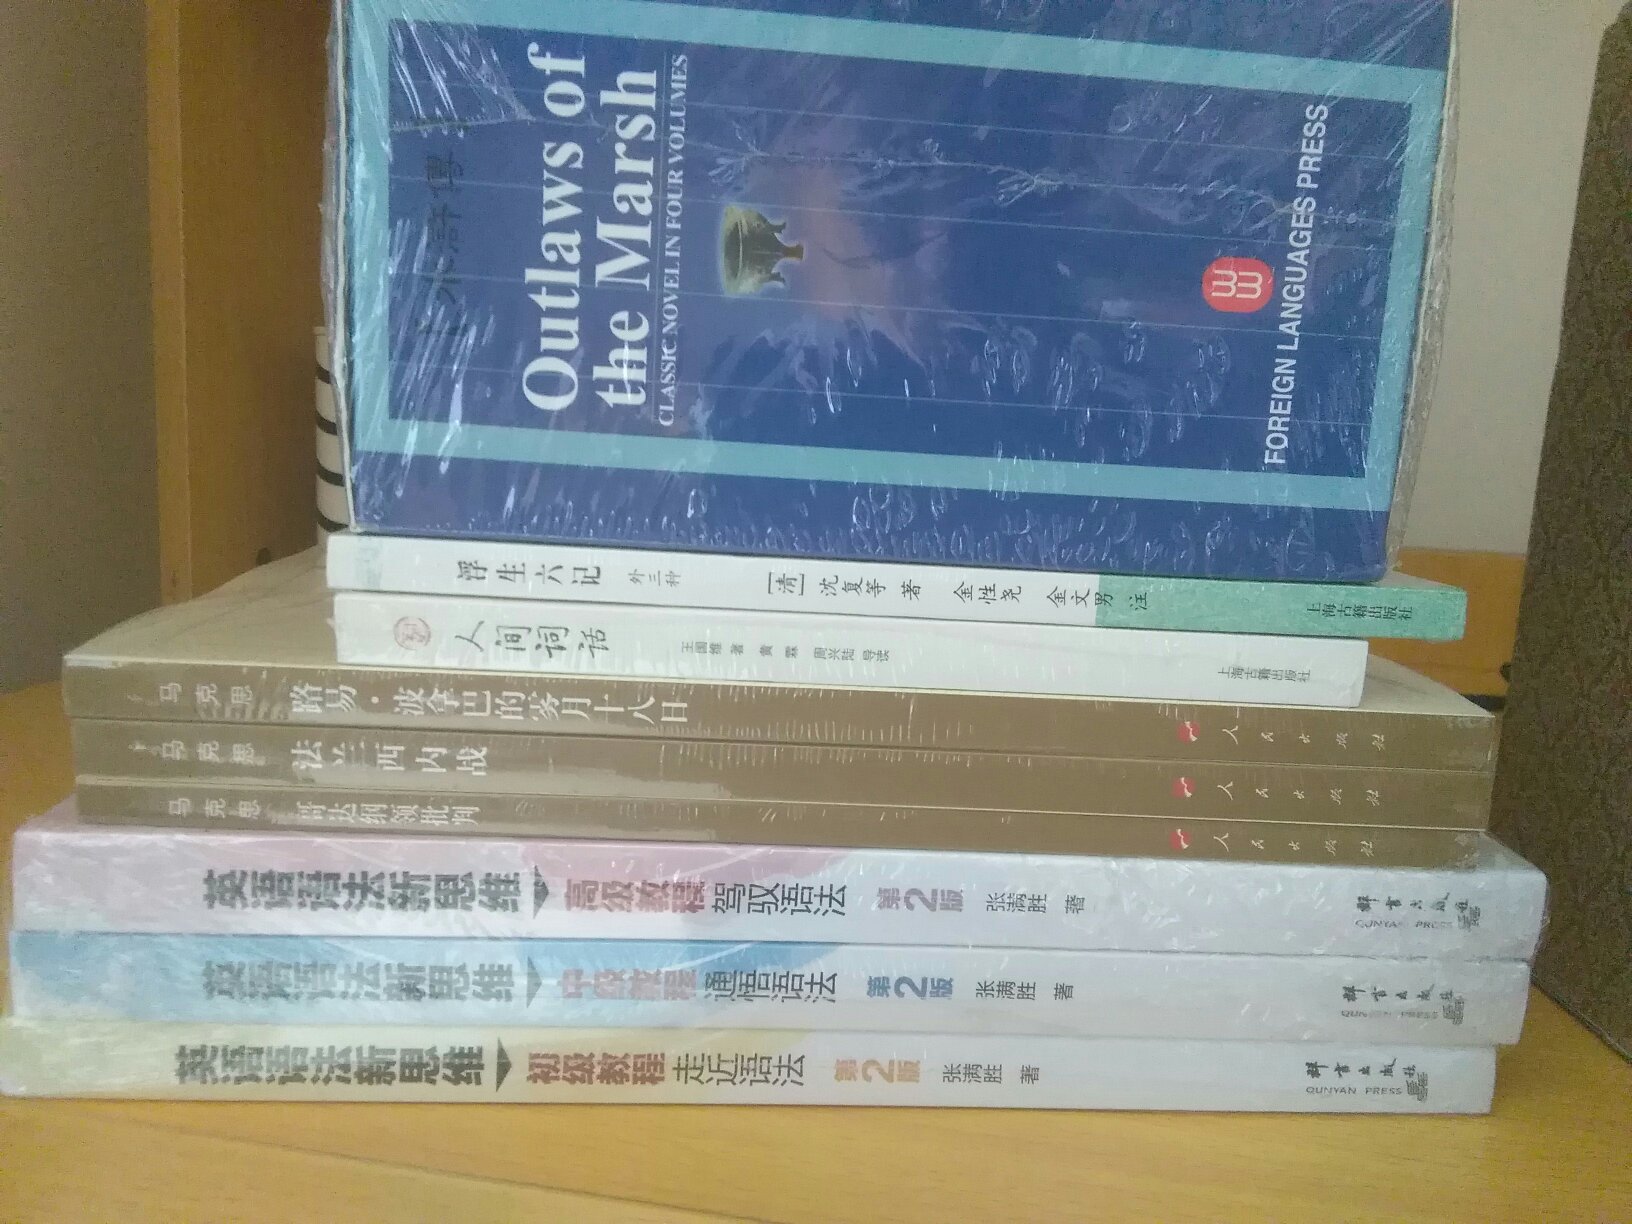 新东方的书经常是这种超大版面，差不多两个《现代汉语词典》那么大，携带很不方便，就不能印刷成市面上一般书的那种大小吗？